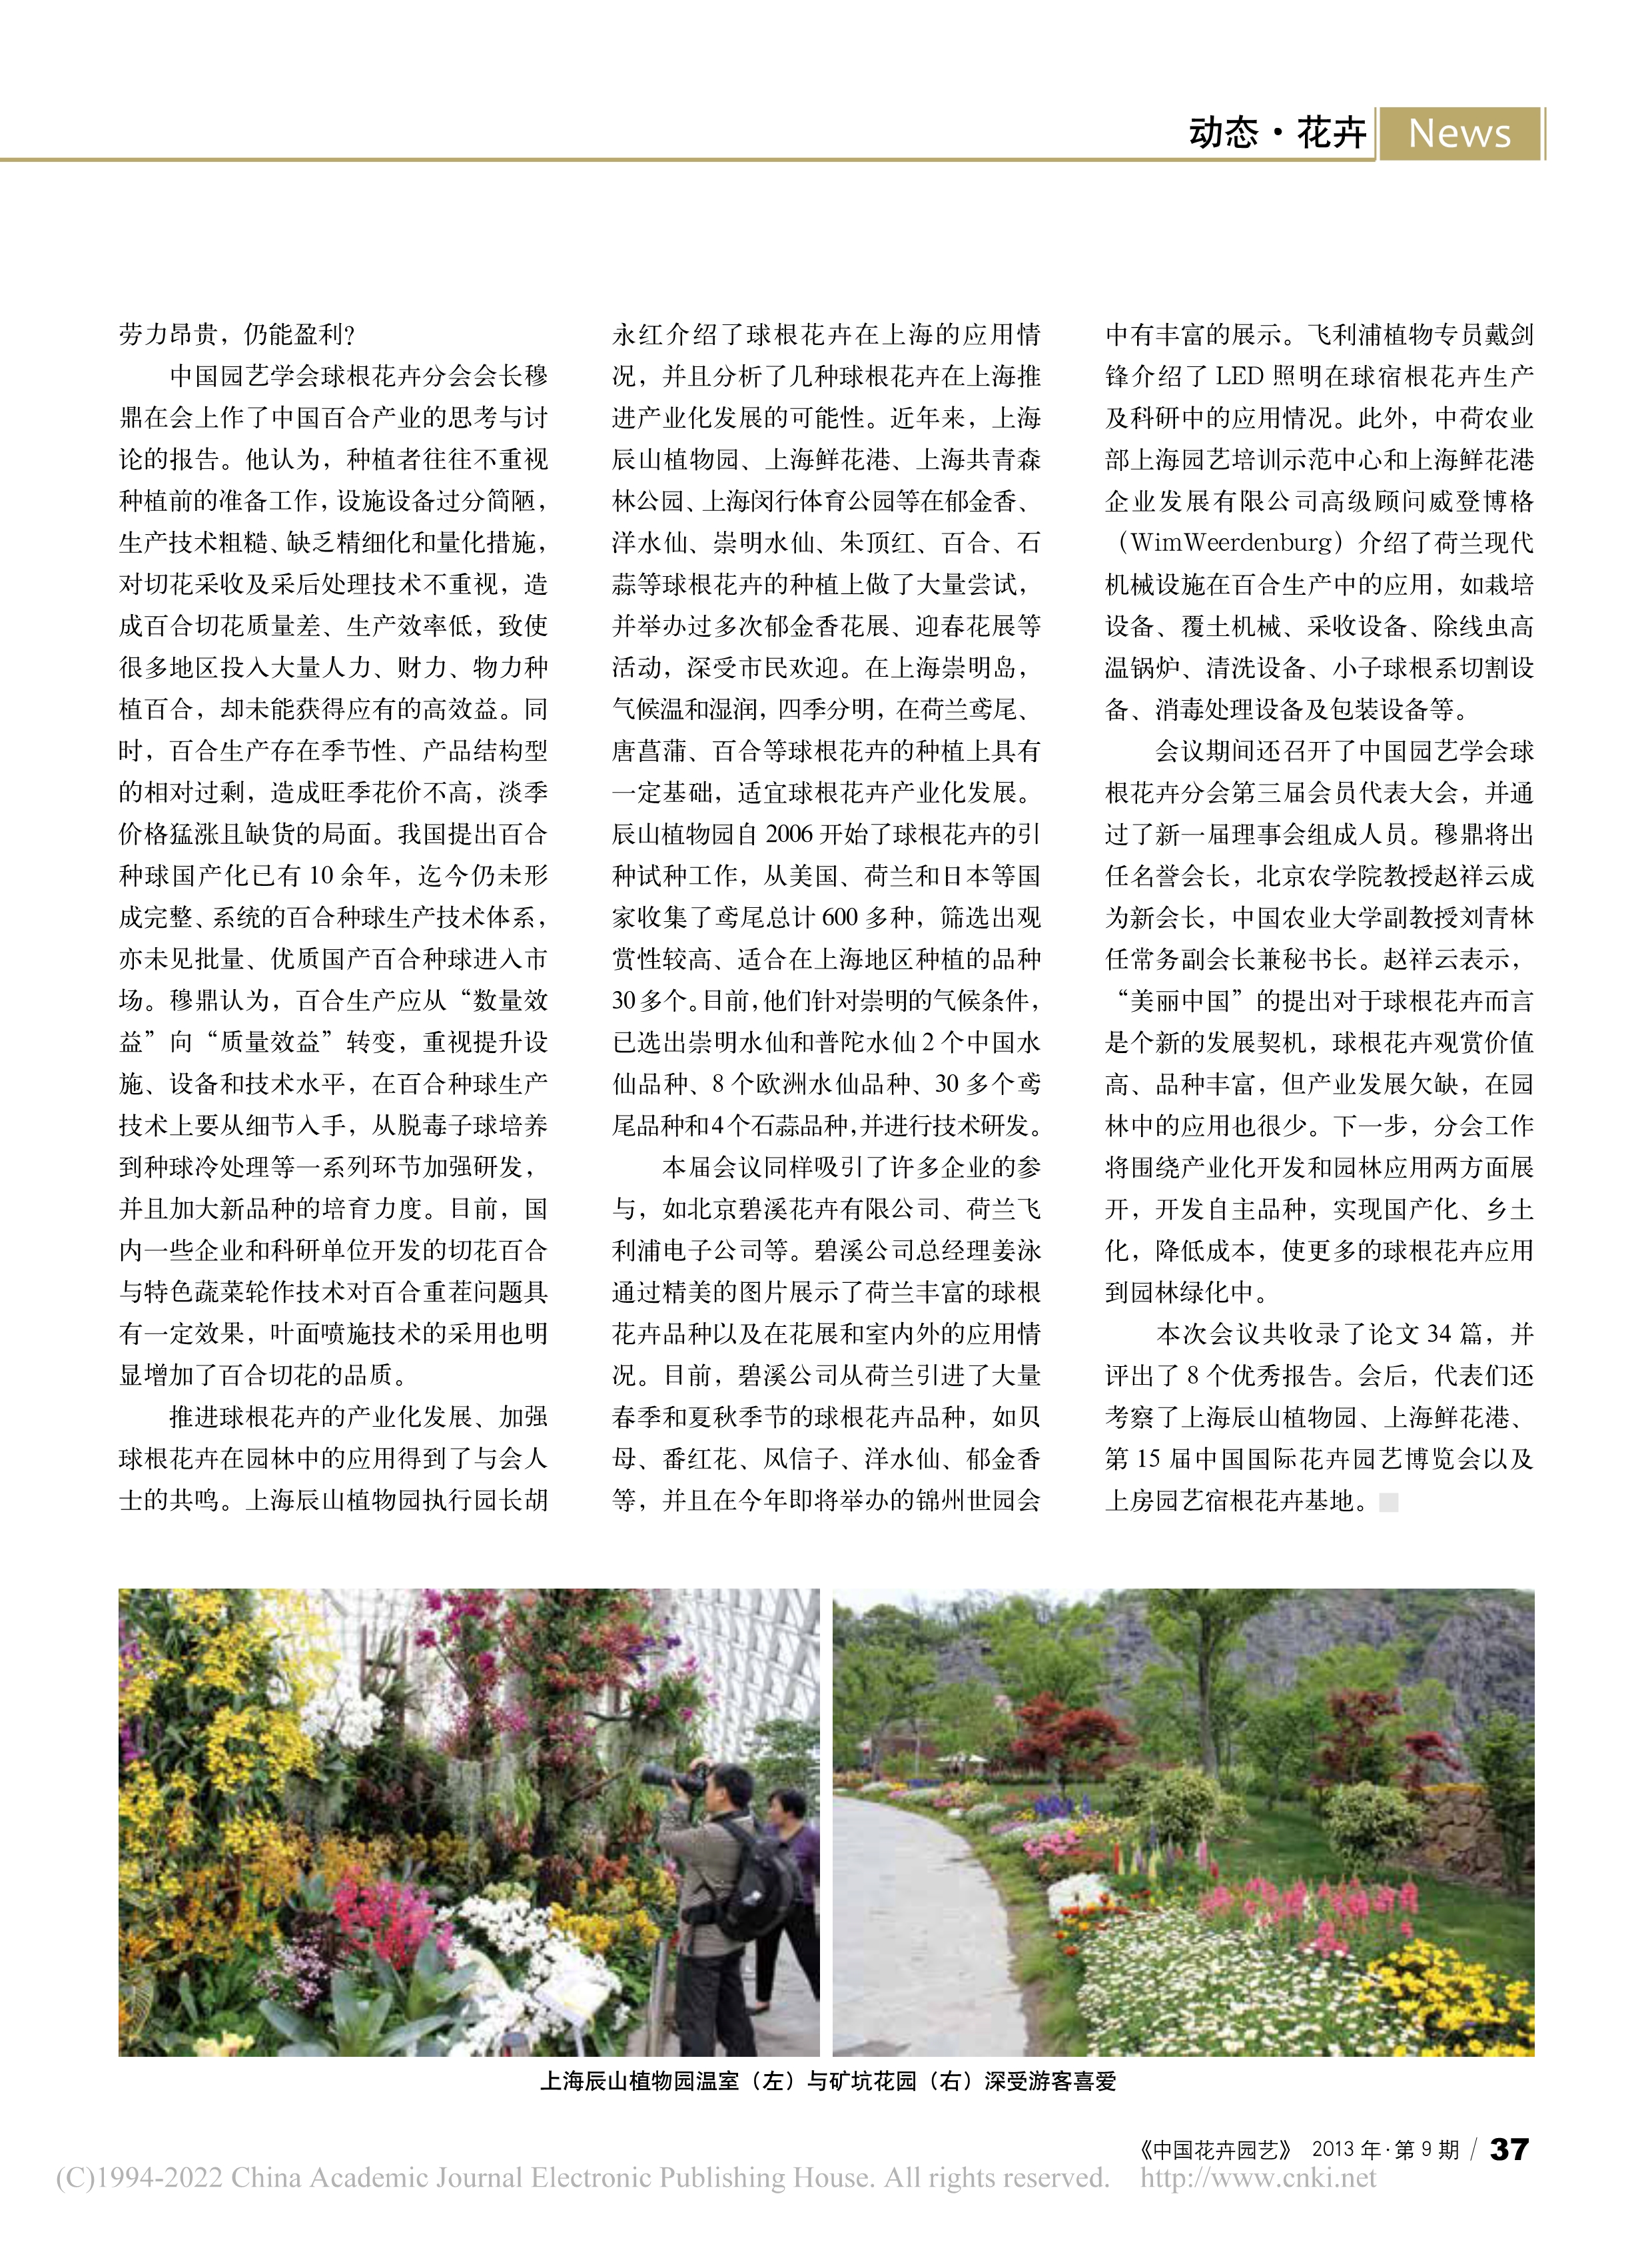 CSBP08 将更多球根花卉应用到园林绿化中——中国球根花卉2013年会在上海召开_王新悦_2